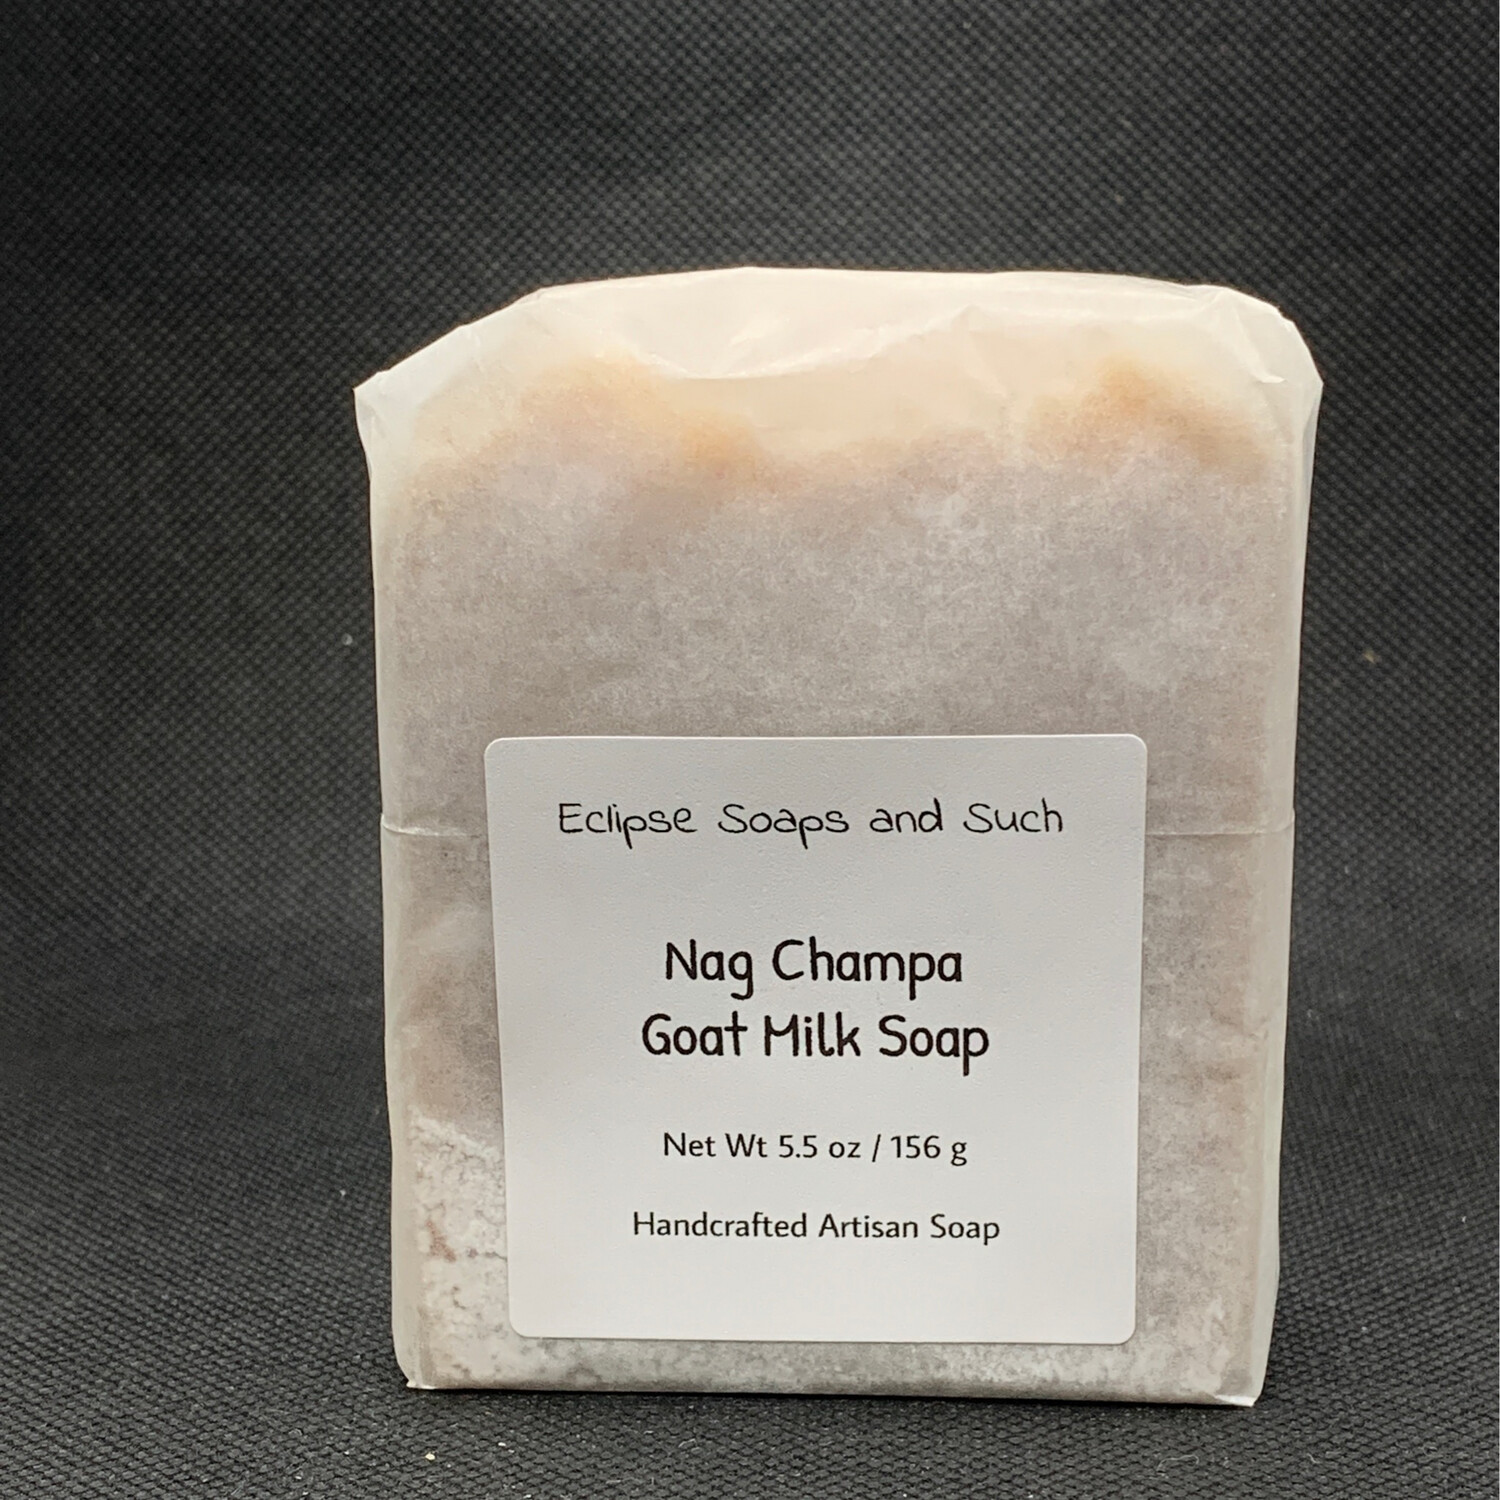 Nag Champa Goat Milk Soap